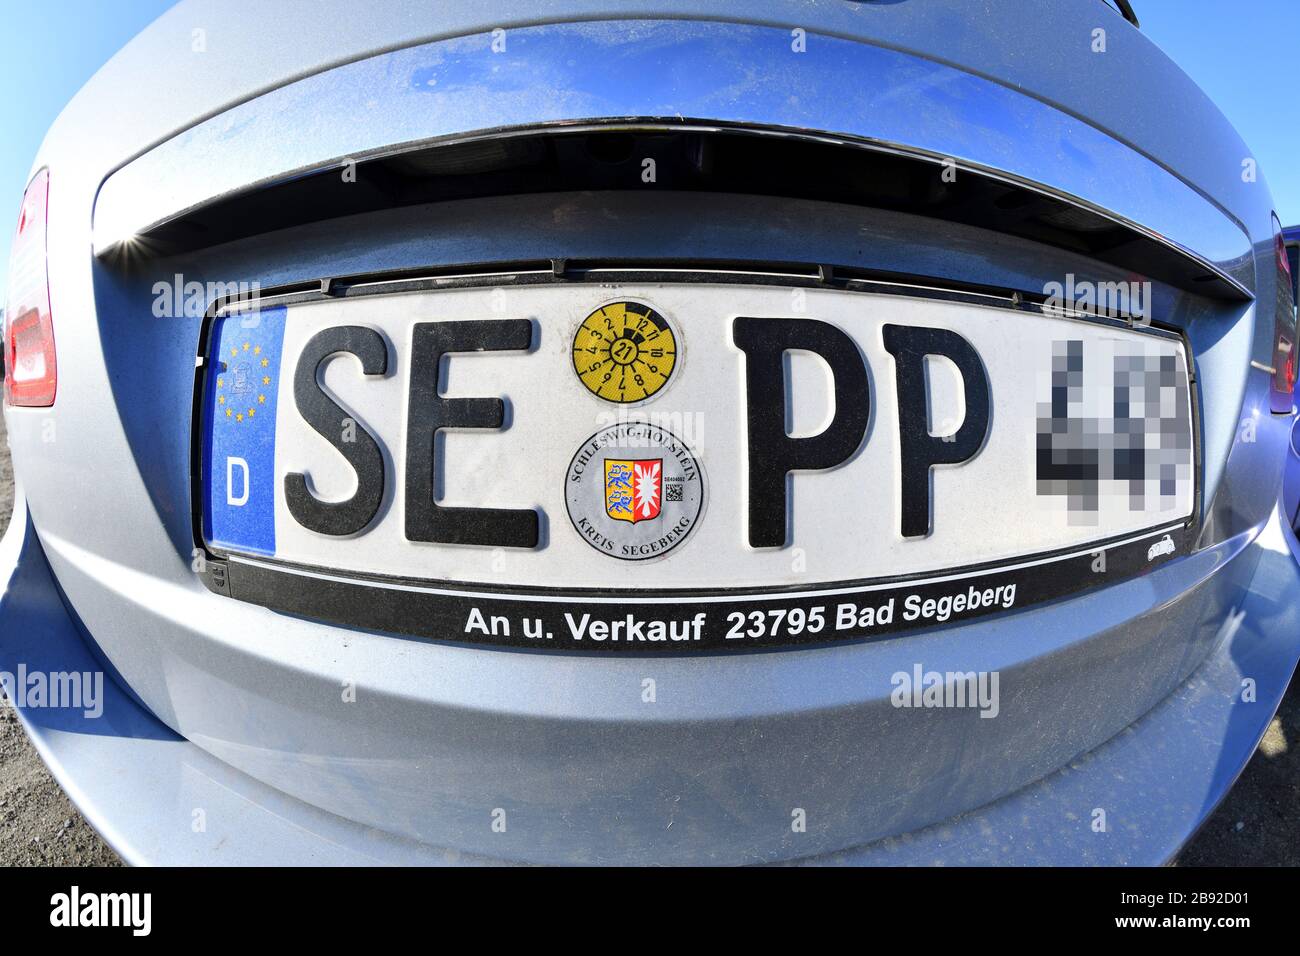 Car registration forms the word Sepp, Autokennzeichen bildet das Wort Sepp Stock Photo